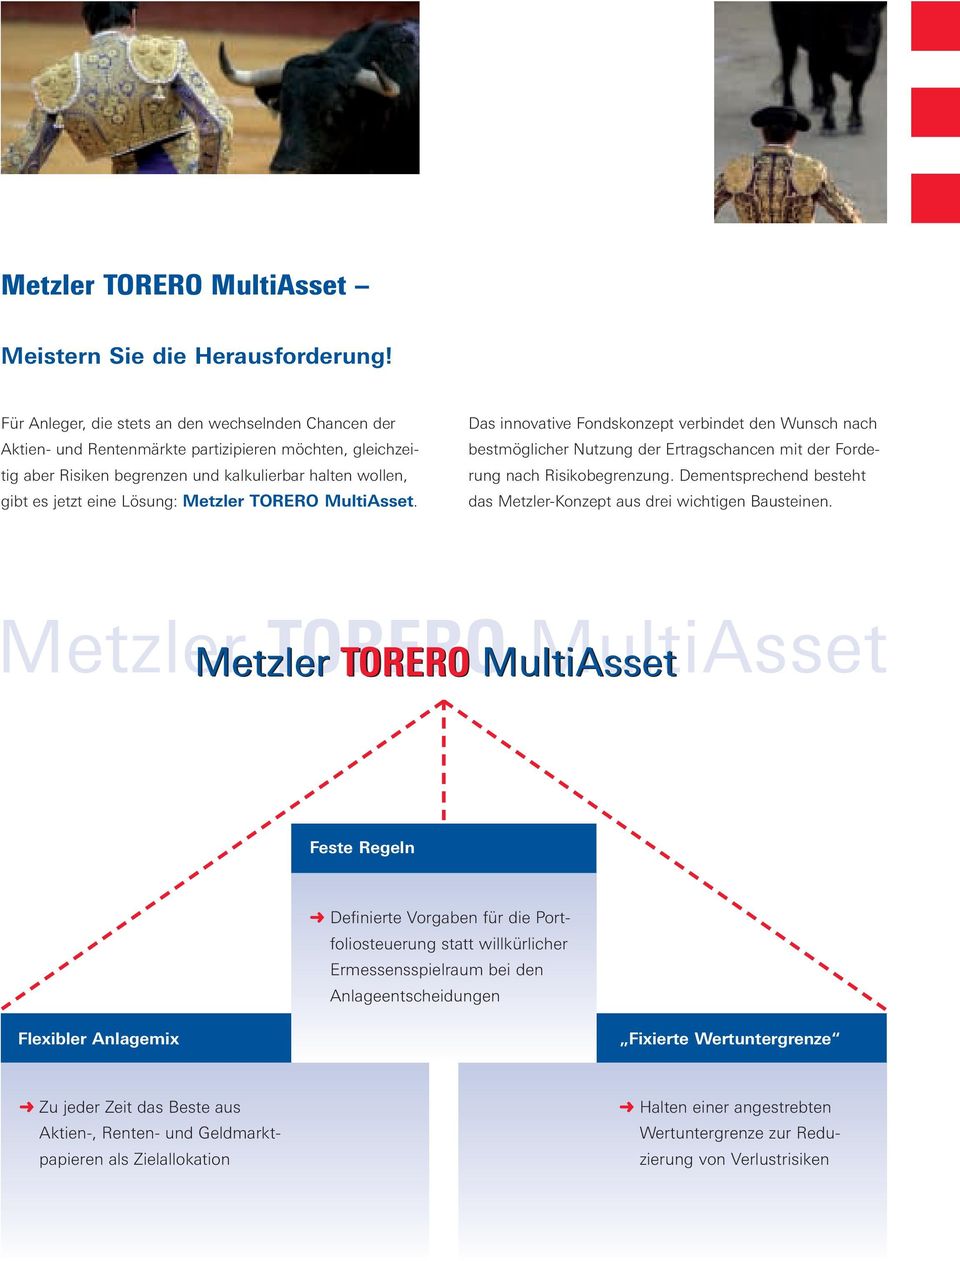 Metzler TORERO MultiAsset. Das innovative Fondskonzept verbindet den Wunsch nach bestmöglicher Nutzung der Ertragschancen mit der Forderung nach Risikobegrenzung.